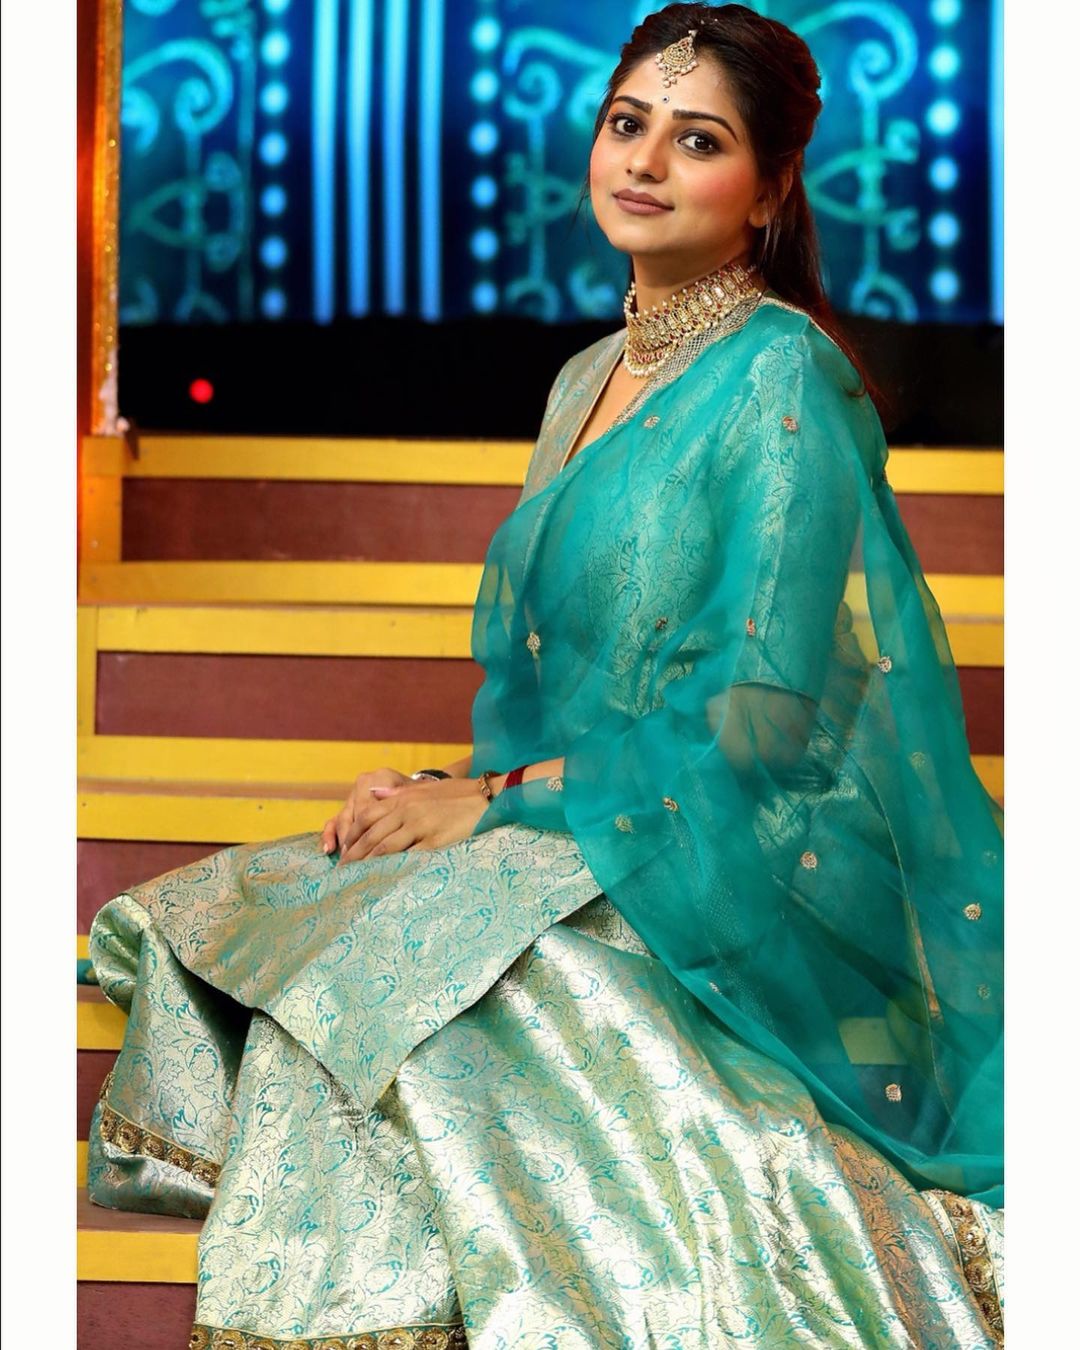 PHOTOS: 5 best traditional looks of Kannada actress Rachita Ram | PINKVILLA